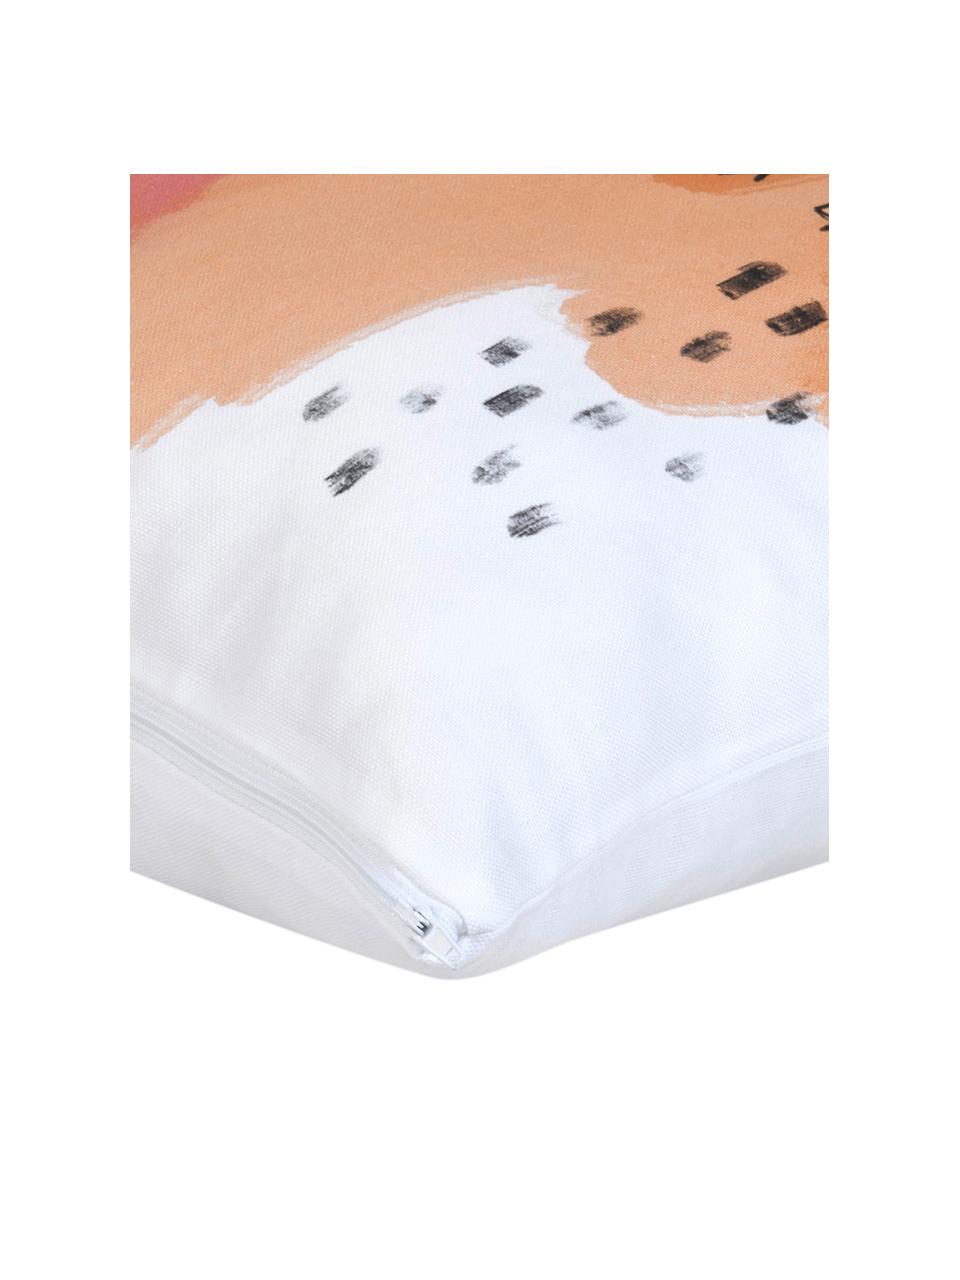 Funda de cojín Trust diseño Kera Till, 100% algodón, Blanco, multicolor, An 40 x L 40 cm